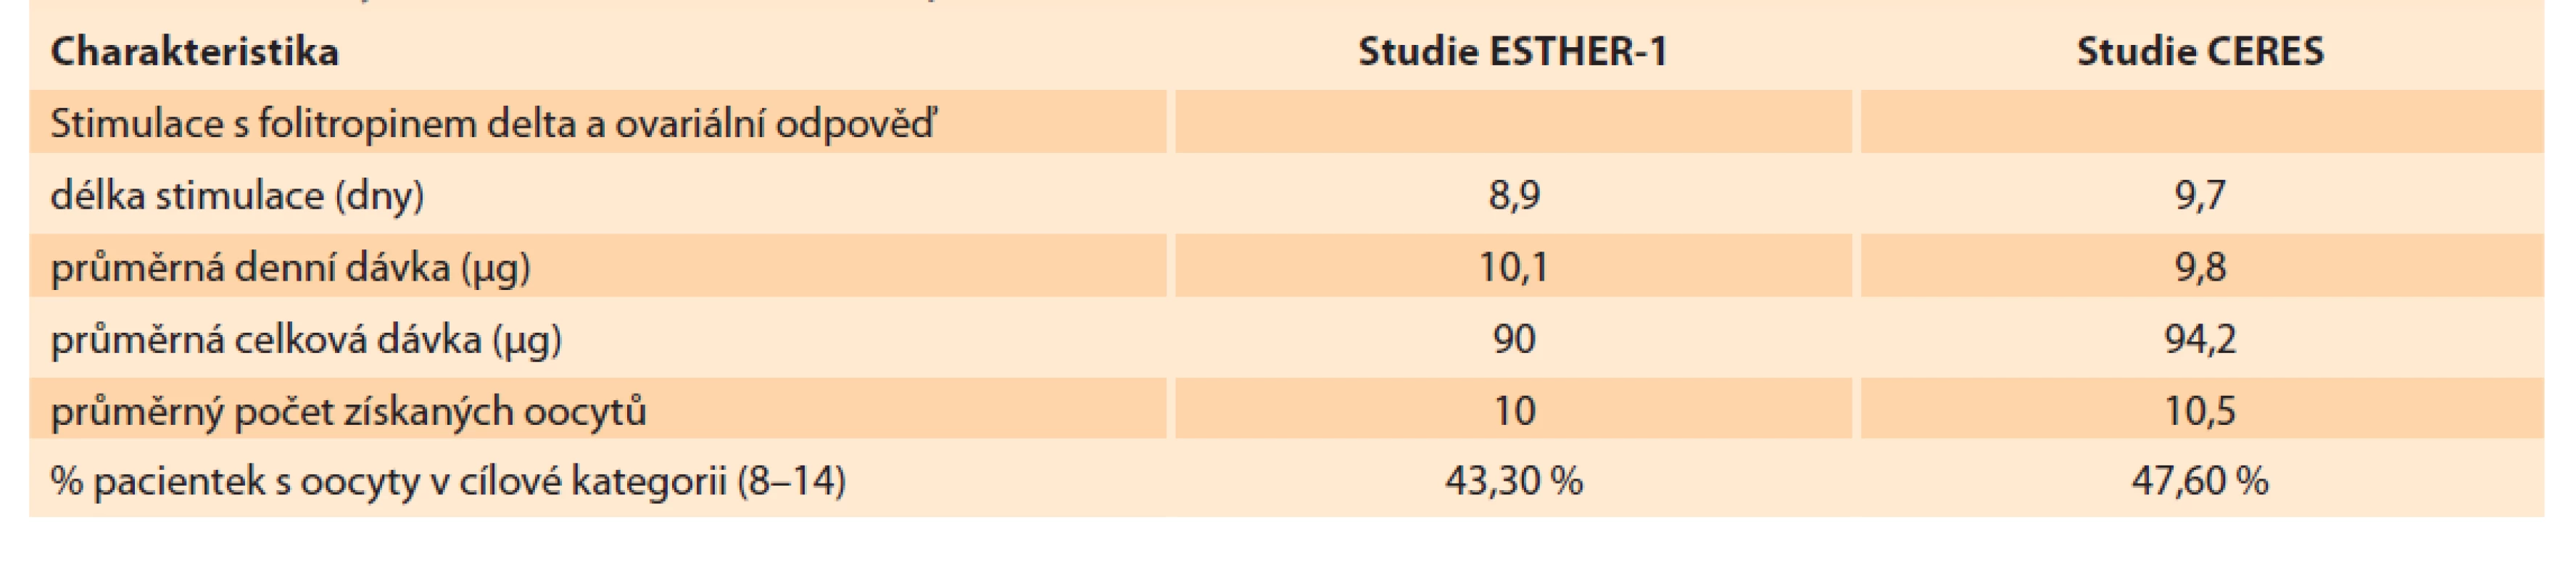 Shrnutí výsledků stimulací, srovnání souborů CERES a ESTHER-1.<br>
Tab. 2. Summary of stimulation results, comparison of CERES and ESTHER-1 fi les.